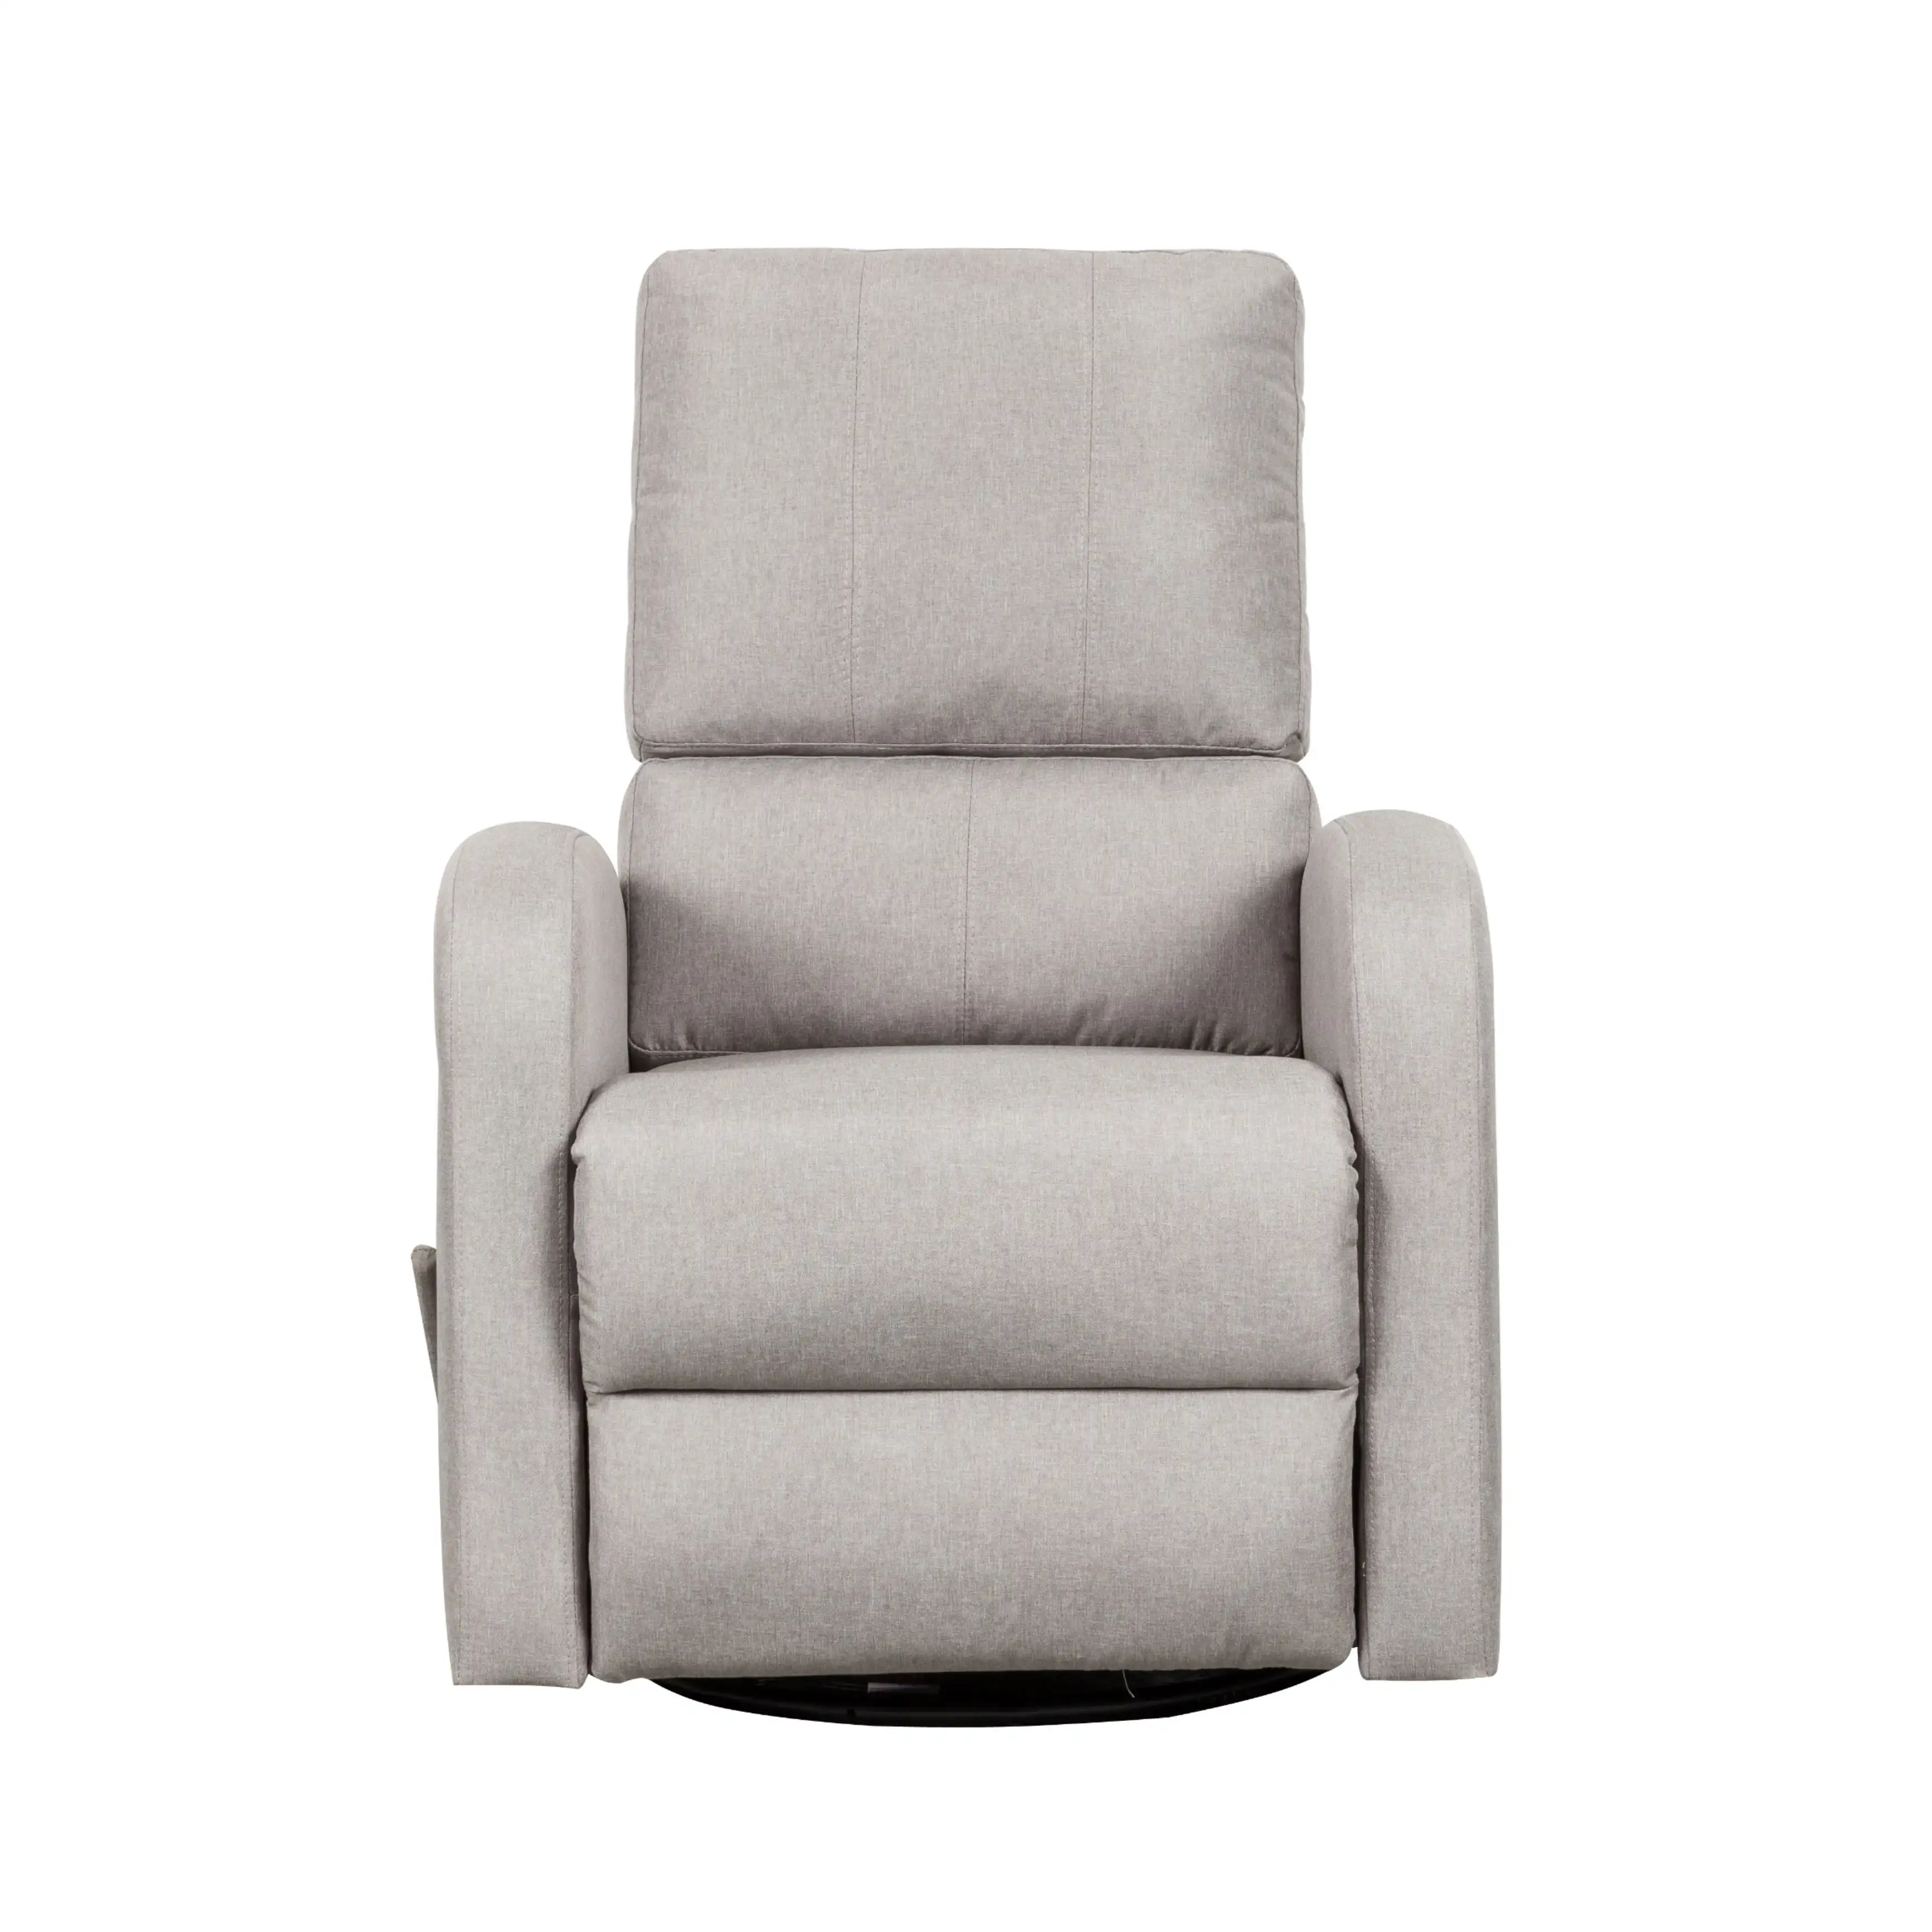 Fauteuil de salon inclinable en tissu KD portatif, chaise pivotante, avec port USB, nouveau design moderne, pour salon